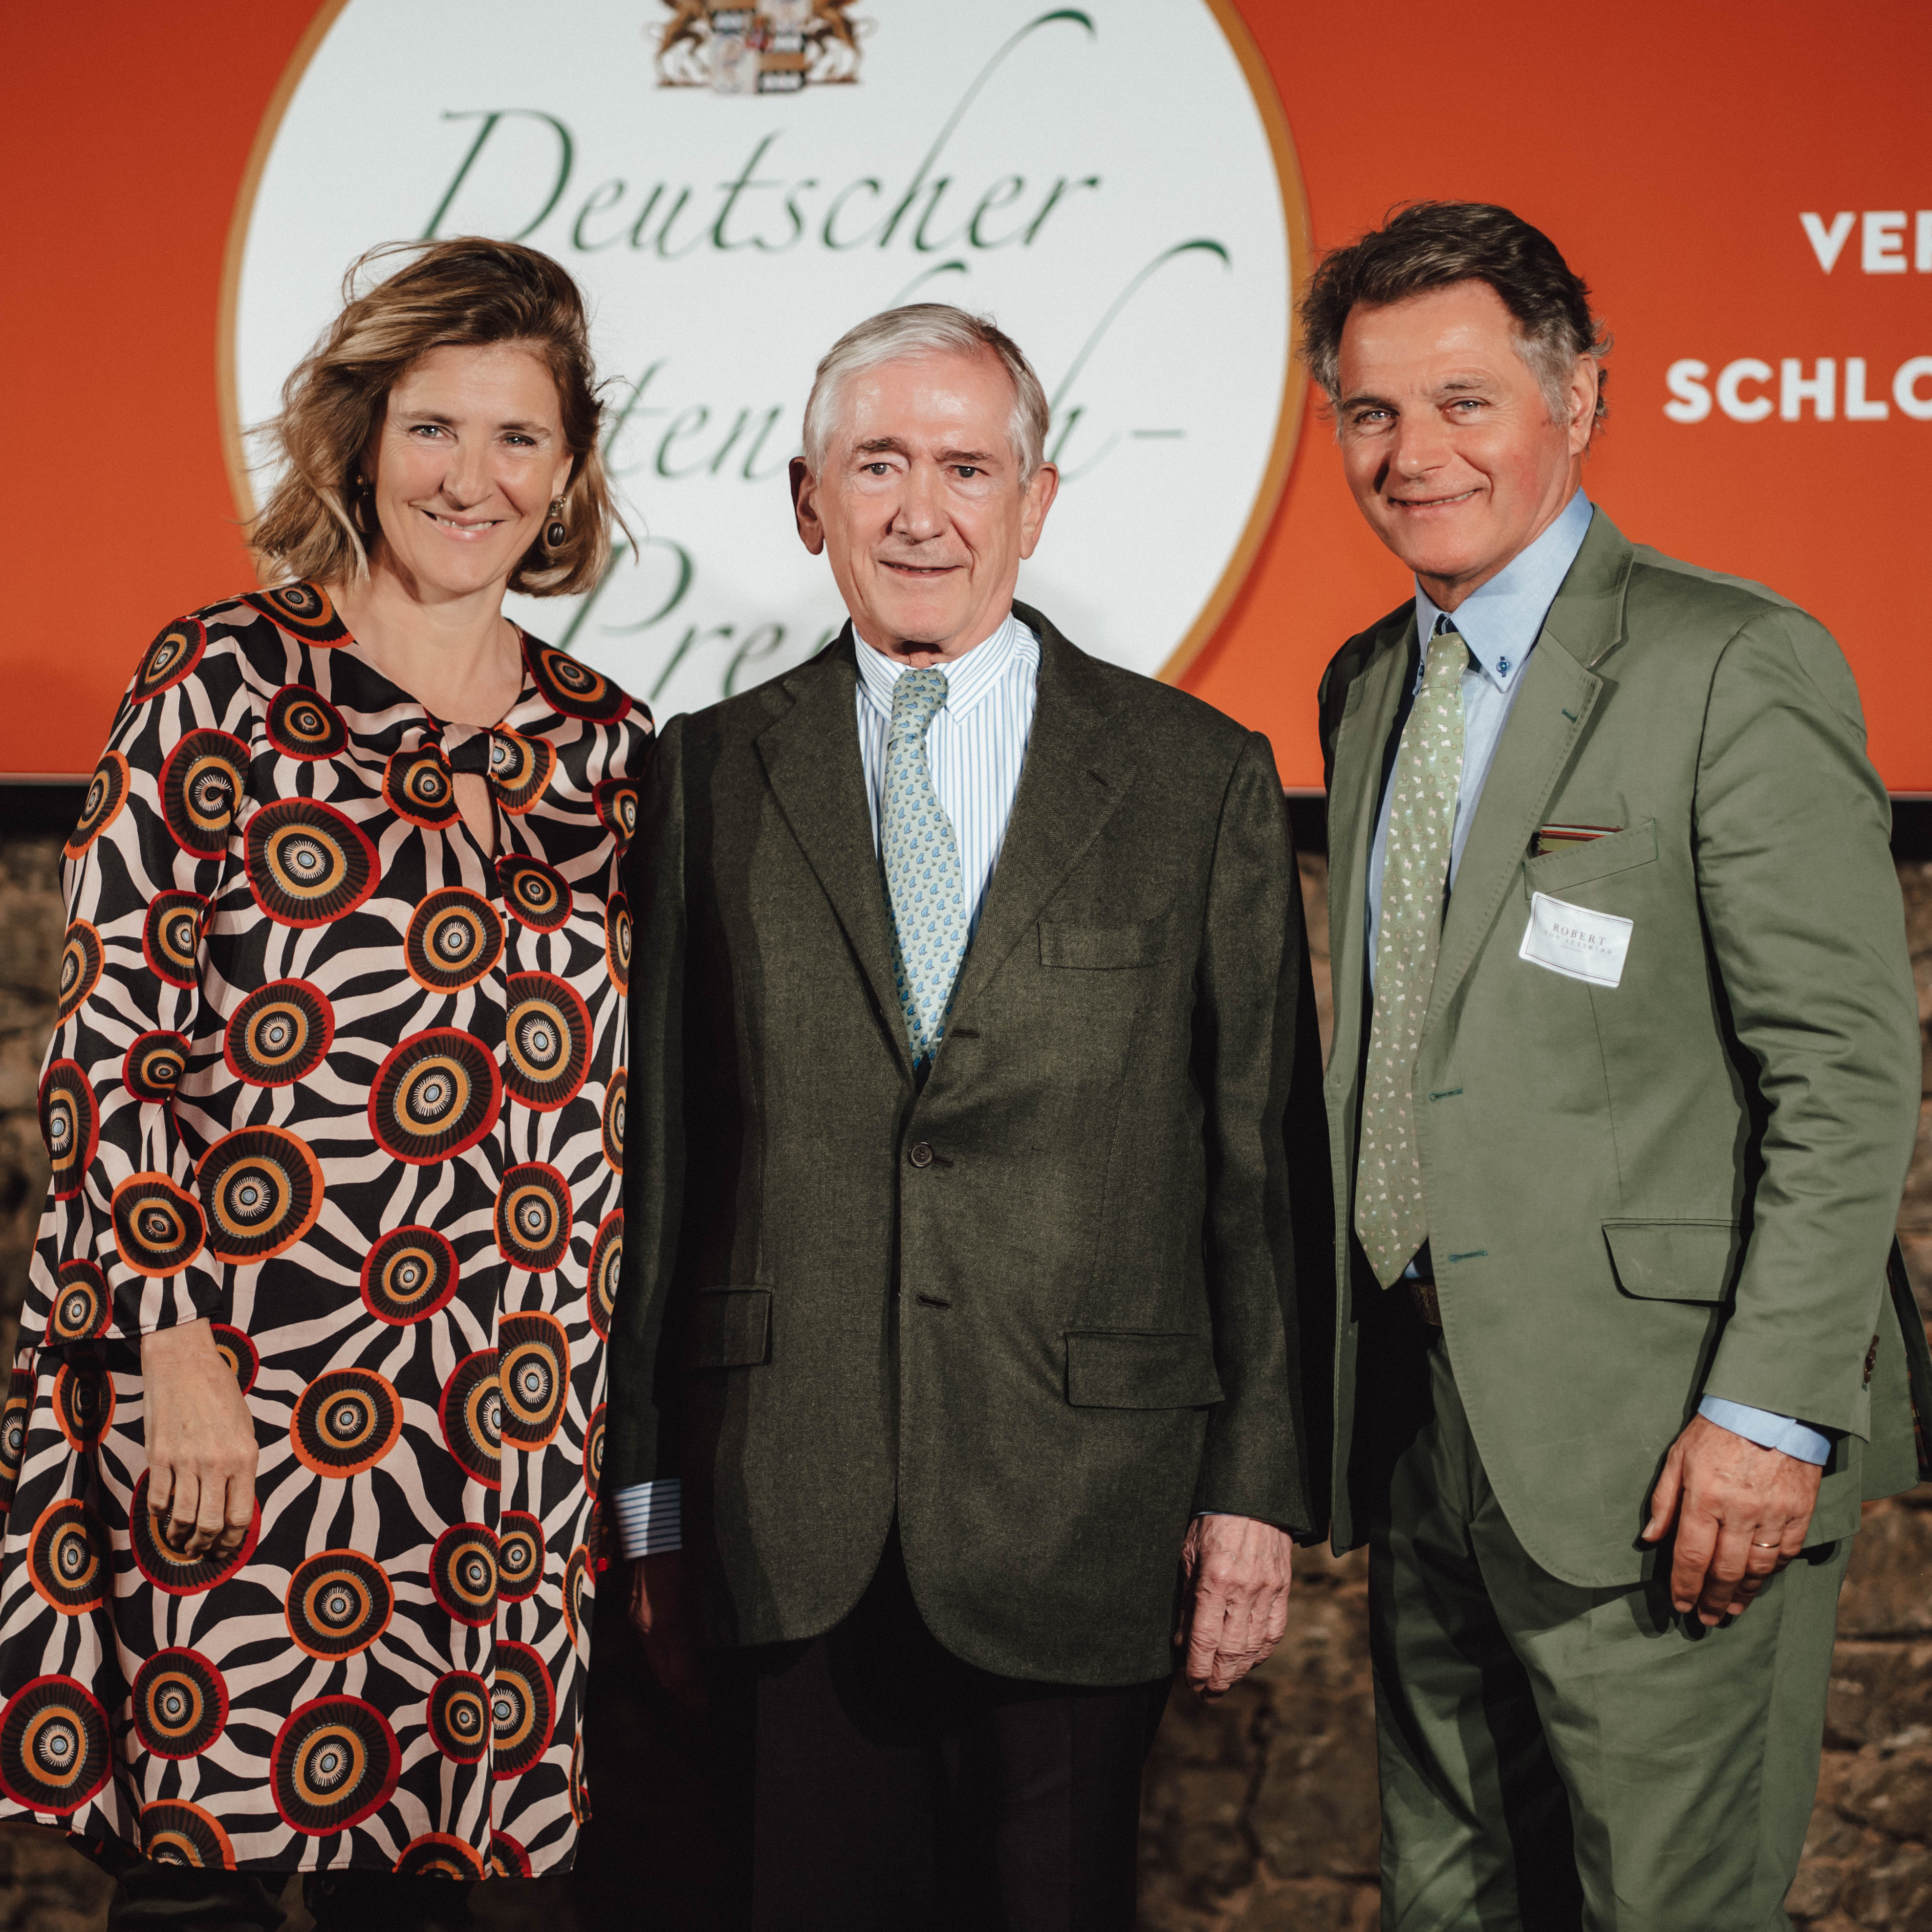 Preistrangende des Deutschen Gartenbuchpreises auf der Bühne